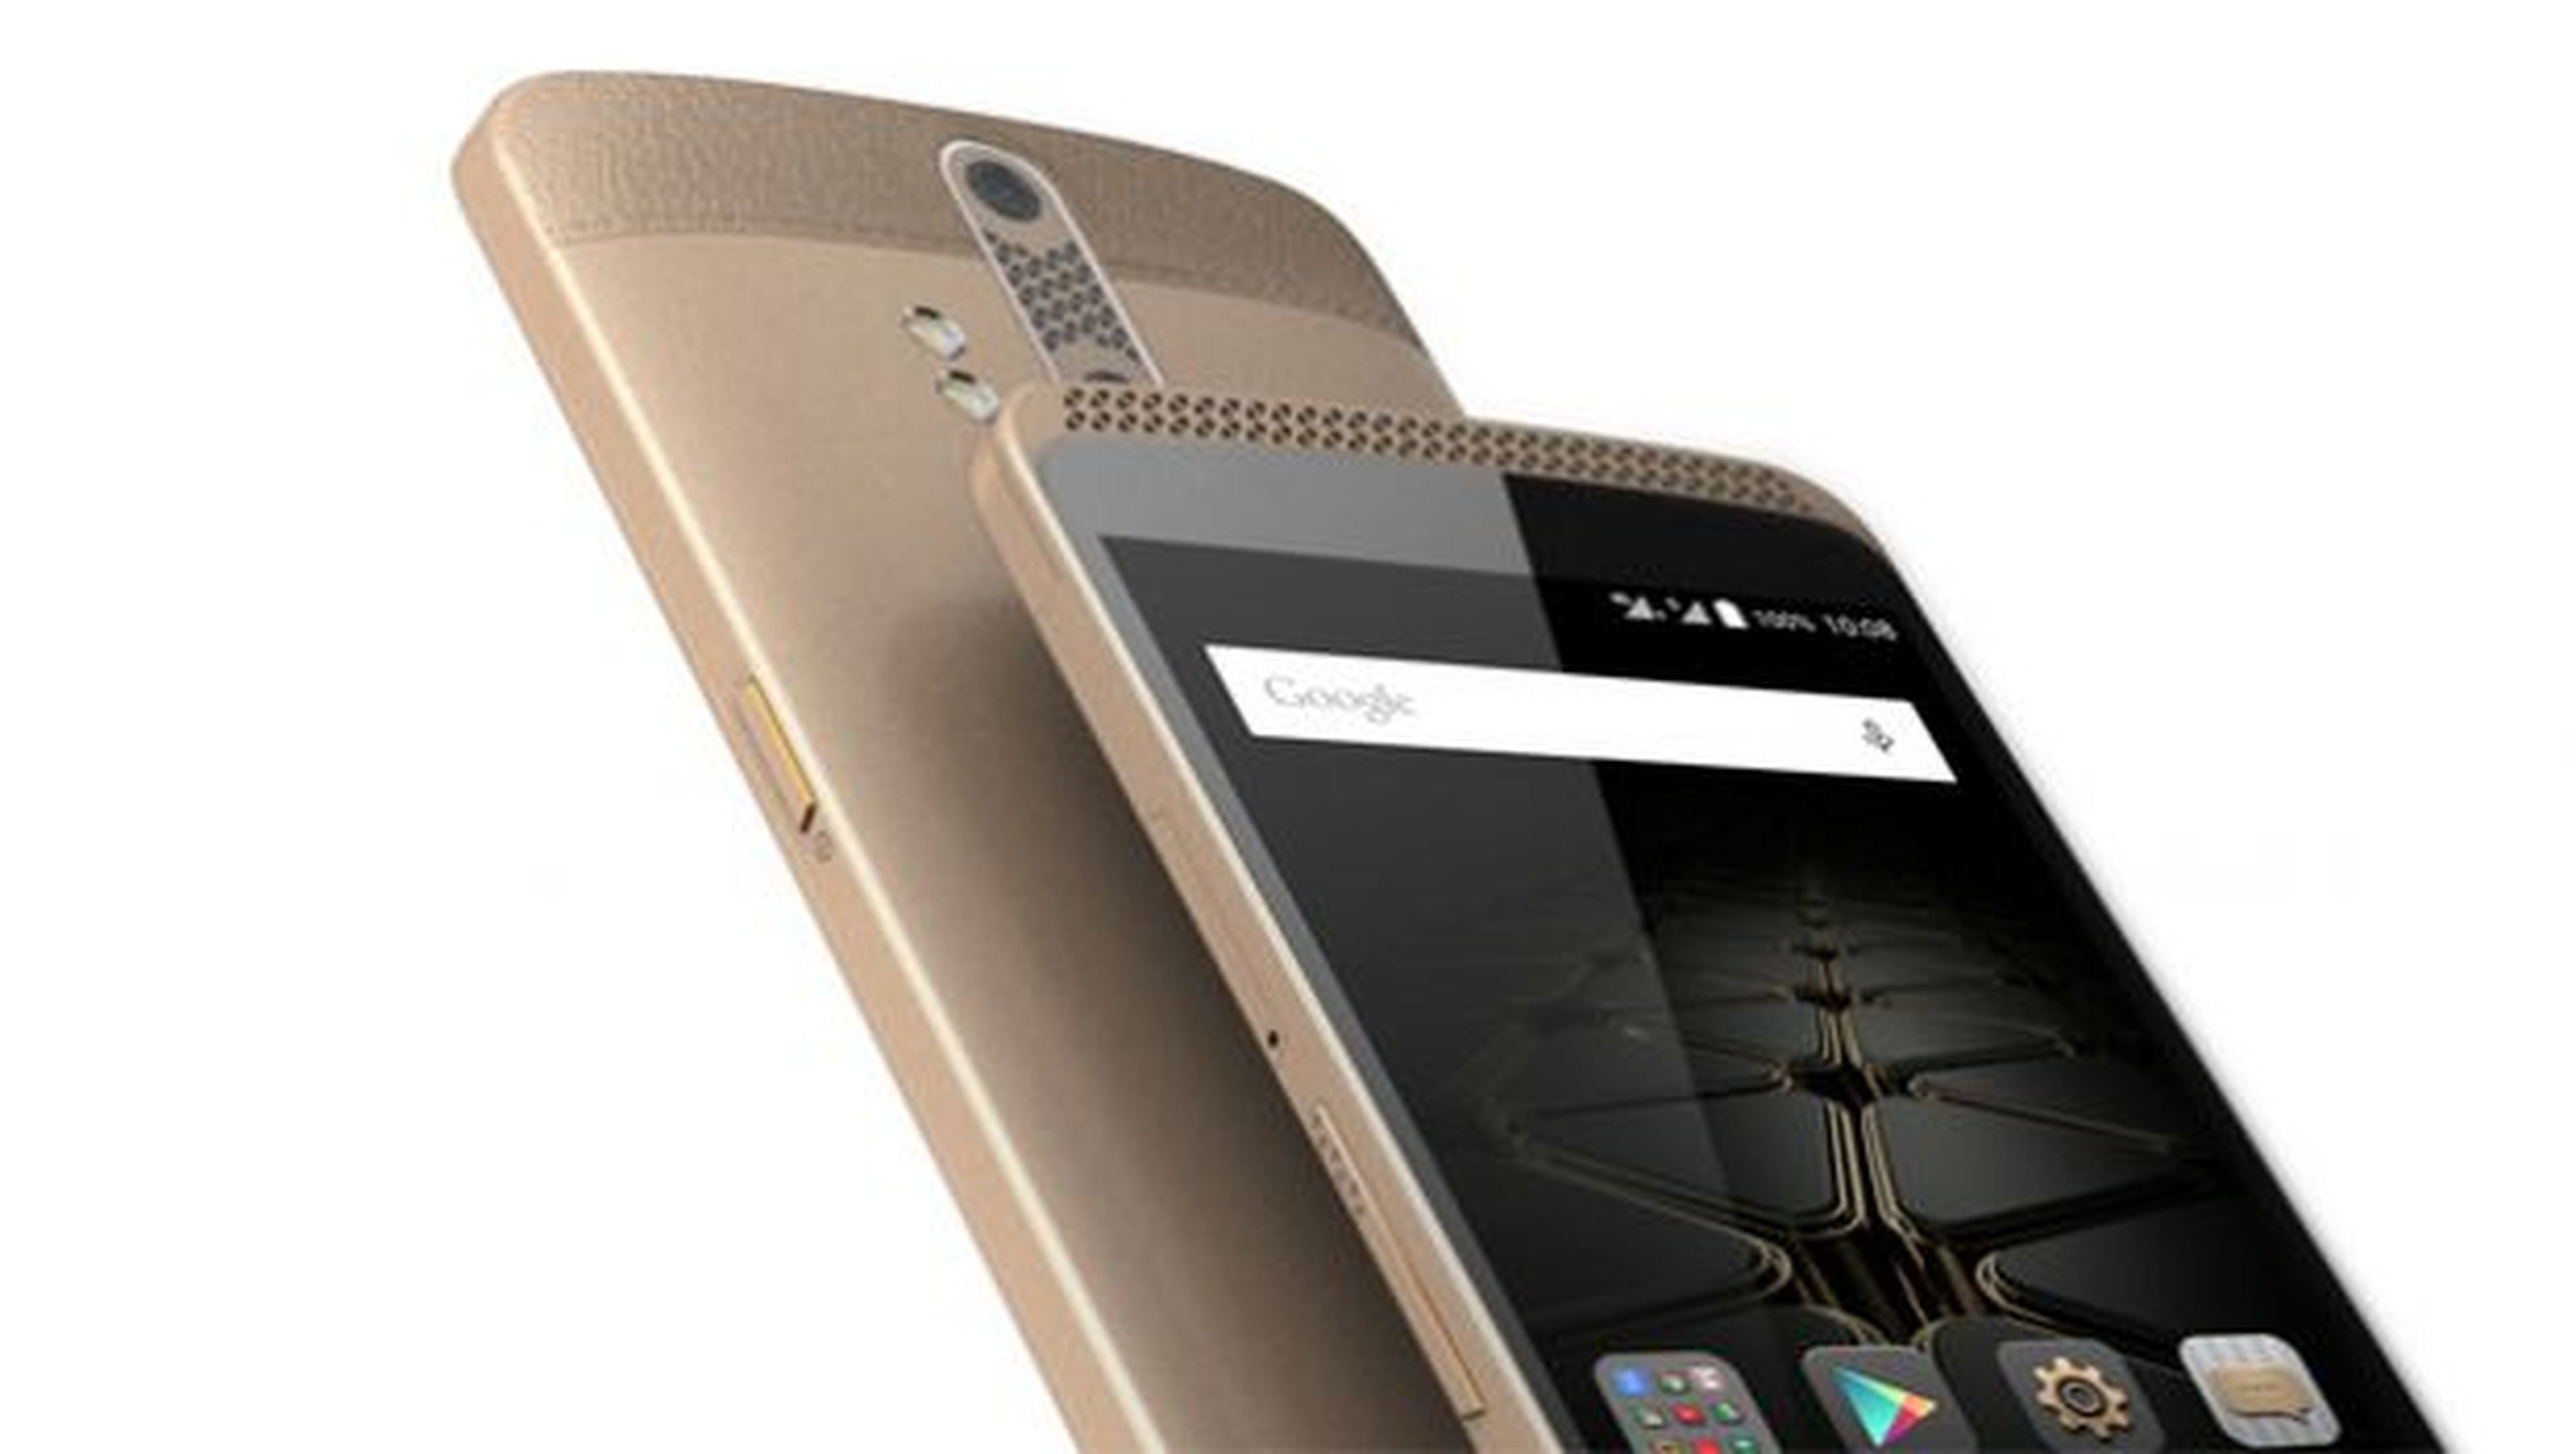 ZTE Axon Elite smartphone chino a la venta en exclusiva en eBay